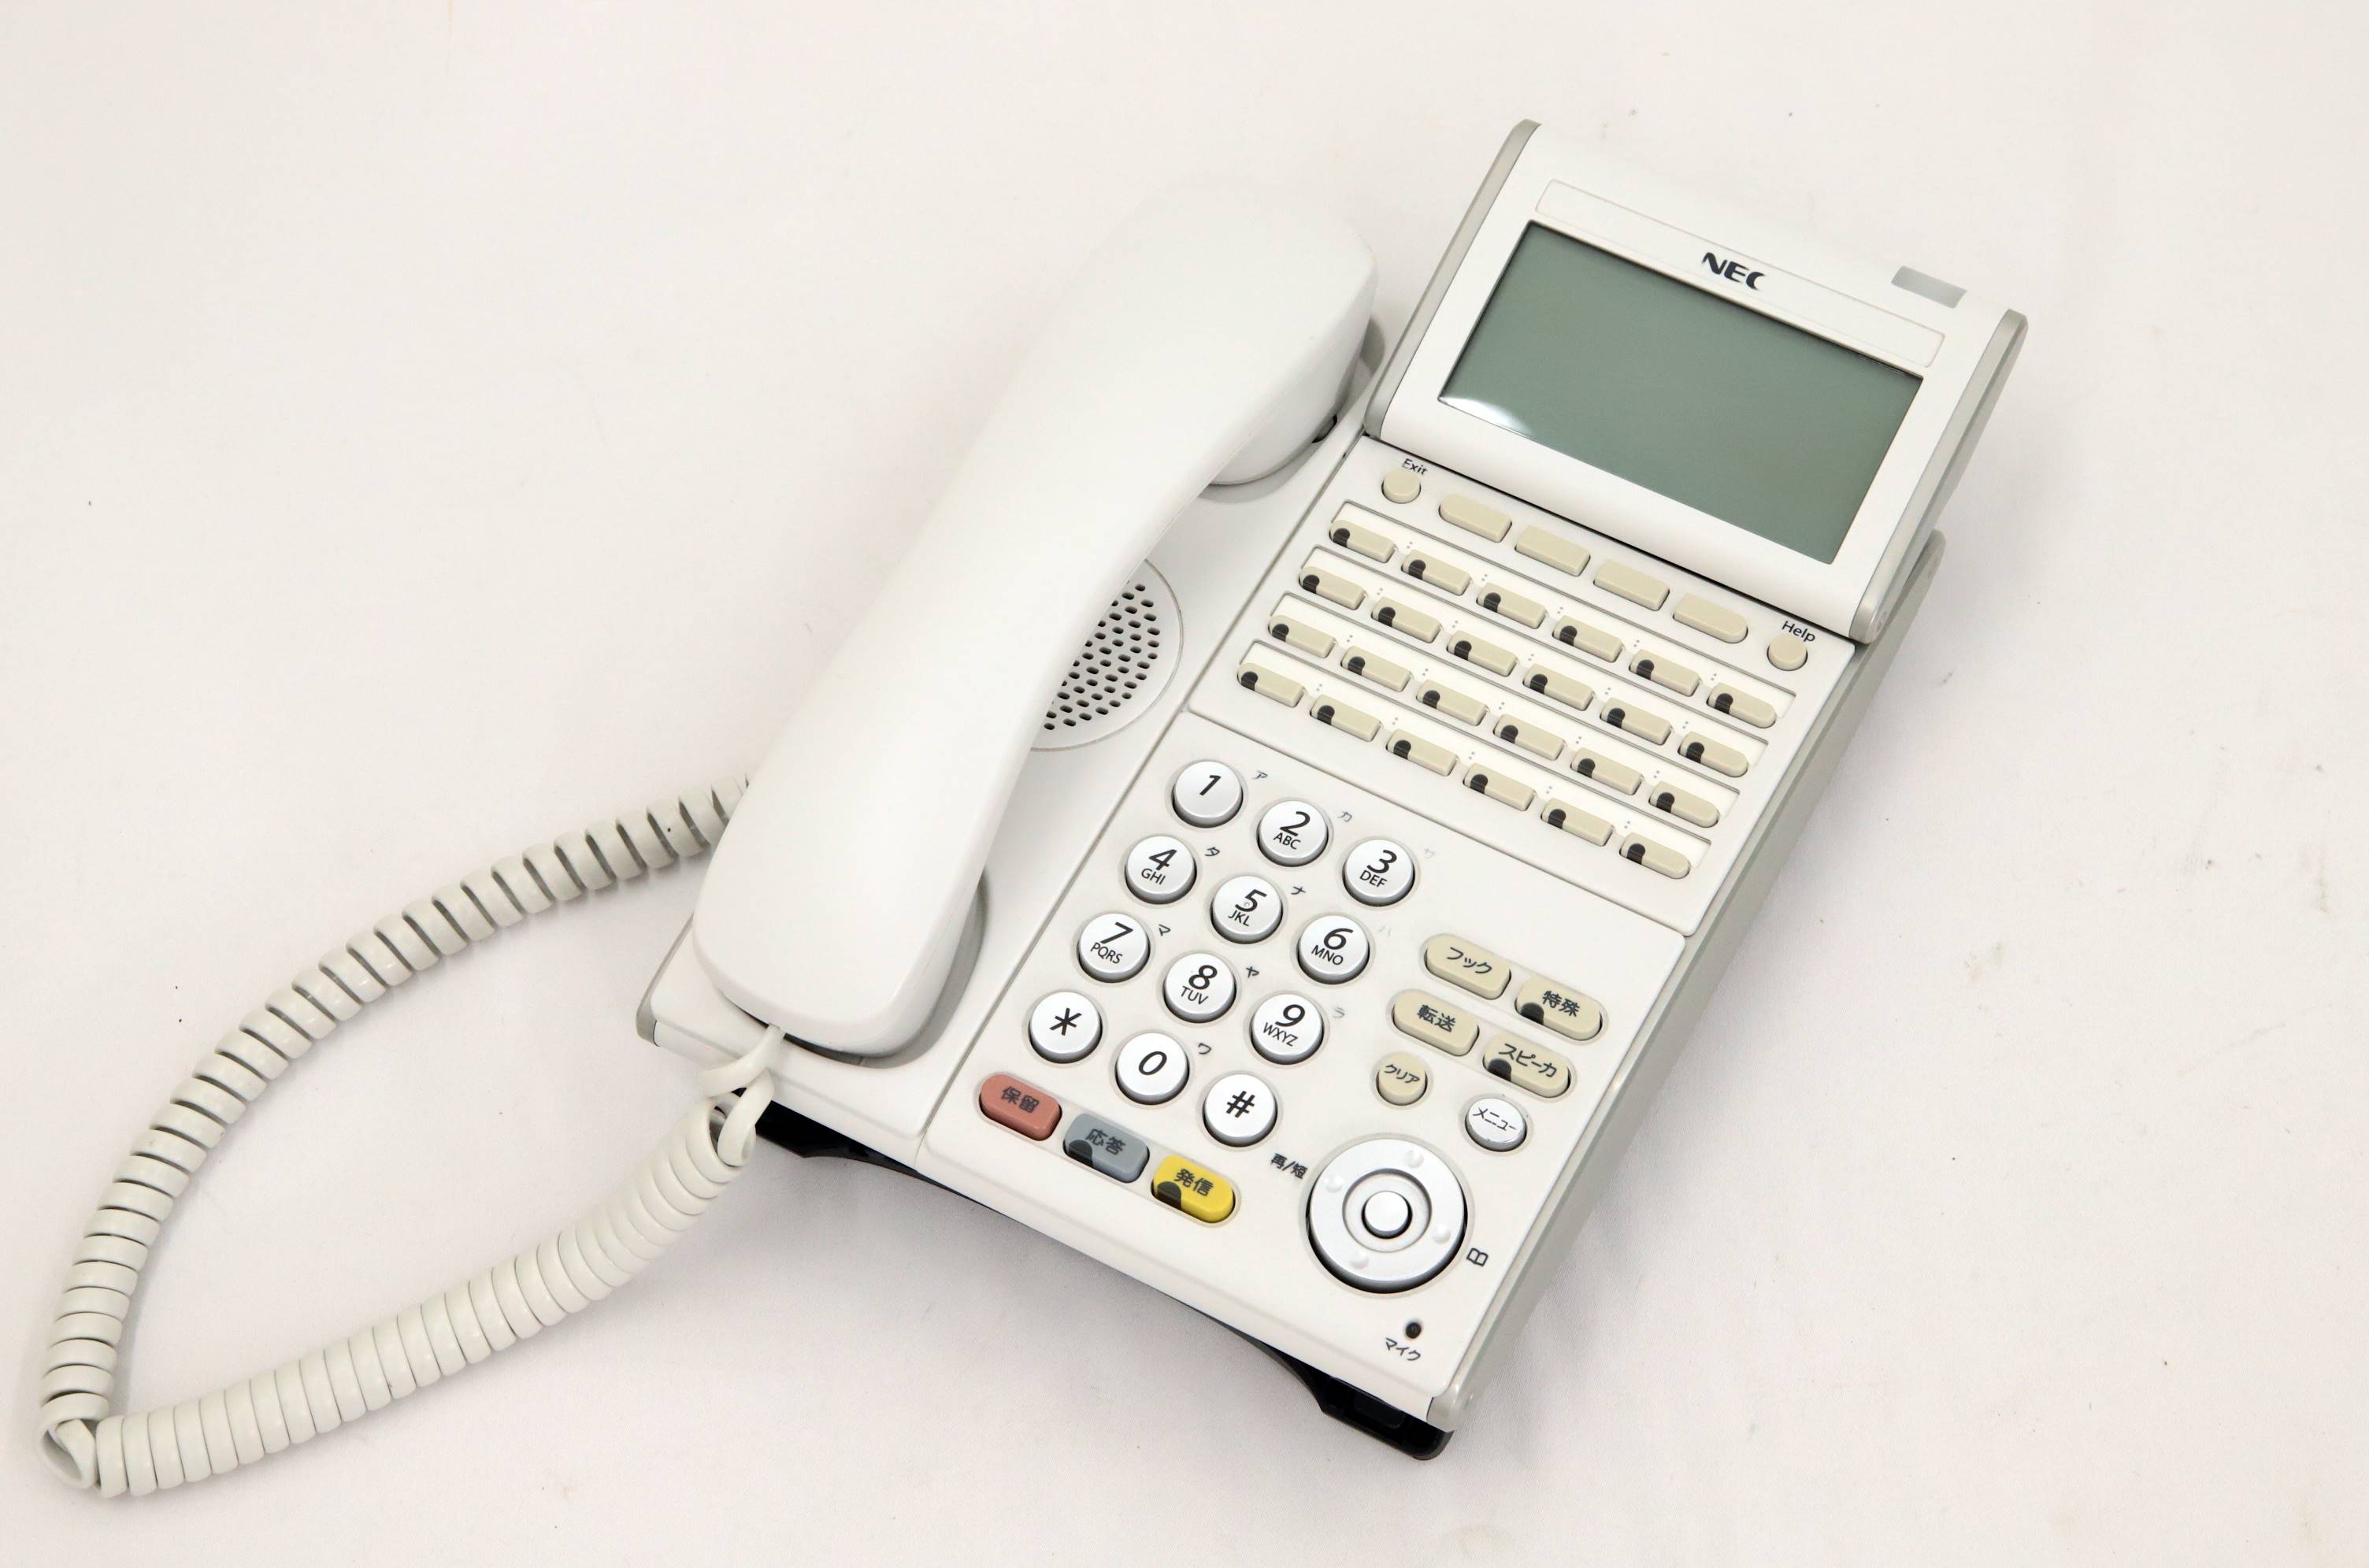 【送料無料】 中古 NEC DTL-24D-1D(WH)TEL ビジネスフォン TEL AspireX DT300 24ボタンデジタル多機能電話機